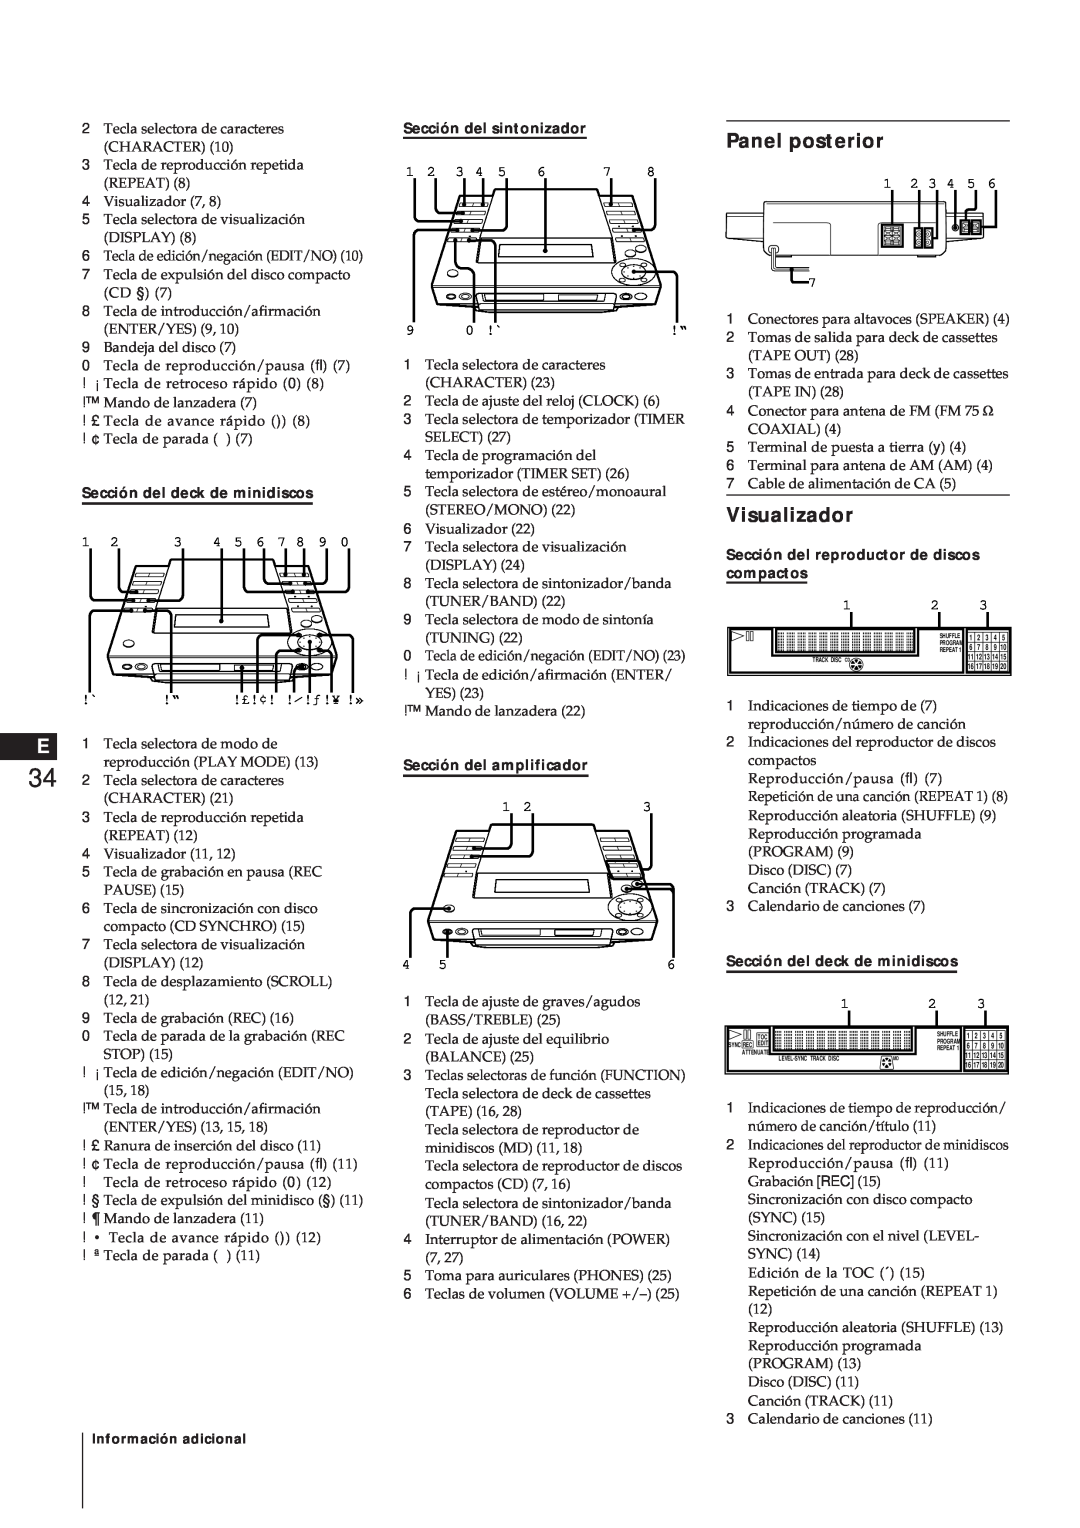 Sony MJ-L1A manual Panel posterior, Visualizador, Sección del deck de minidiscos, Sección del sintonizador 